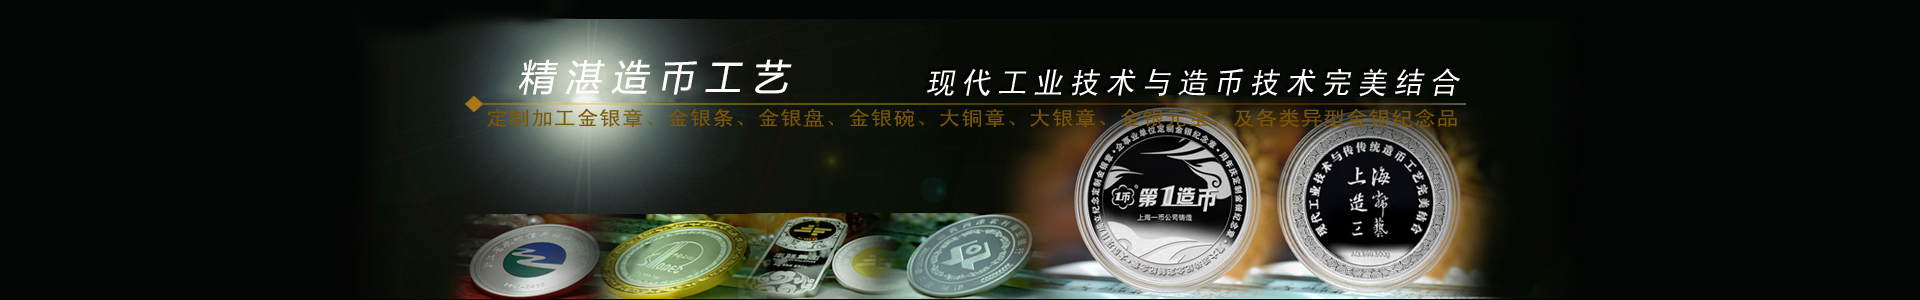 纯银纪念币价格_纯银纪念币制作_上海造币厂